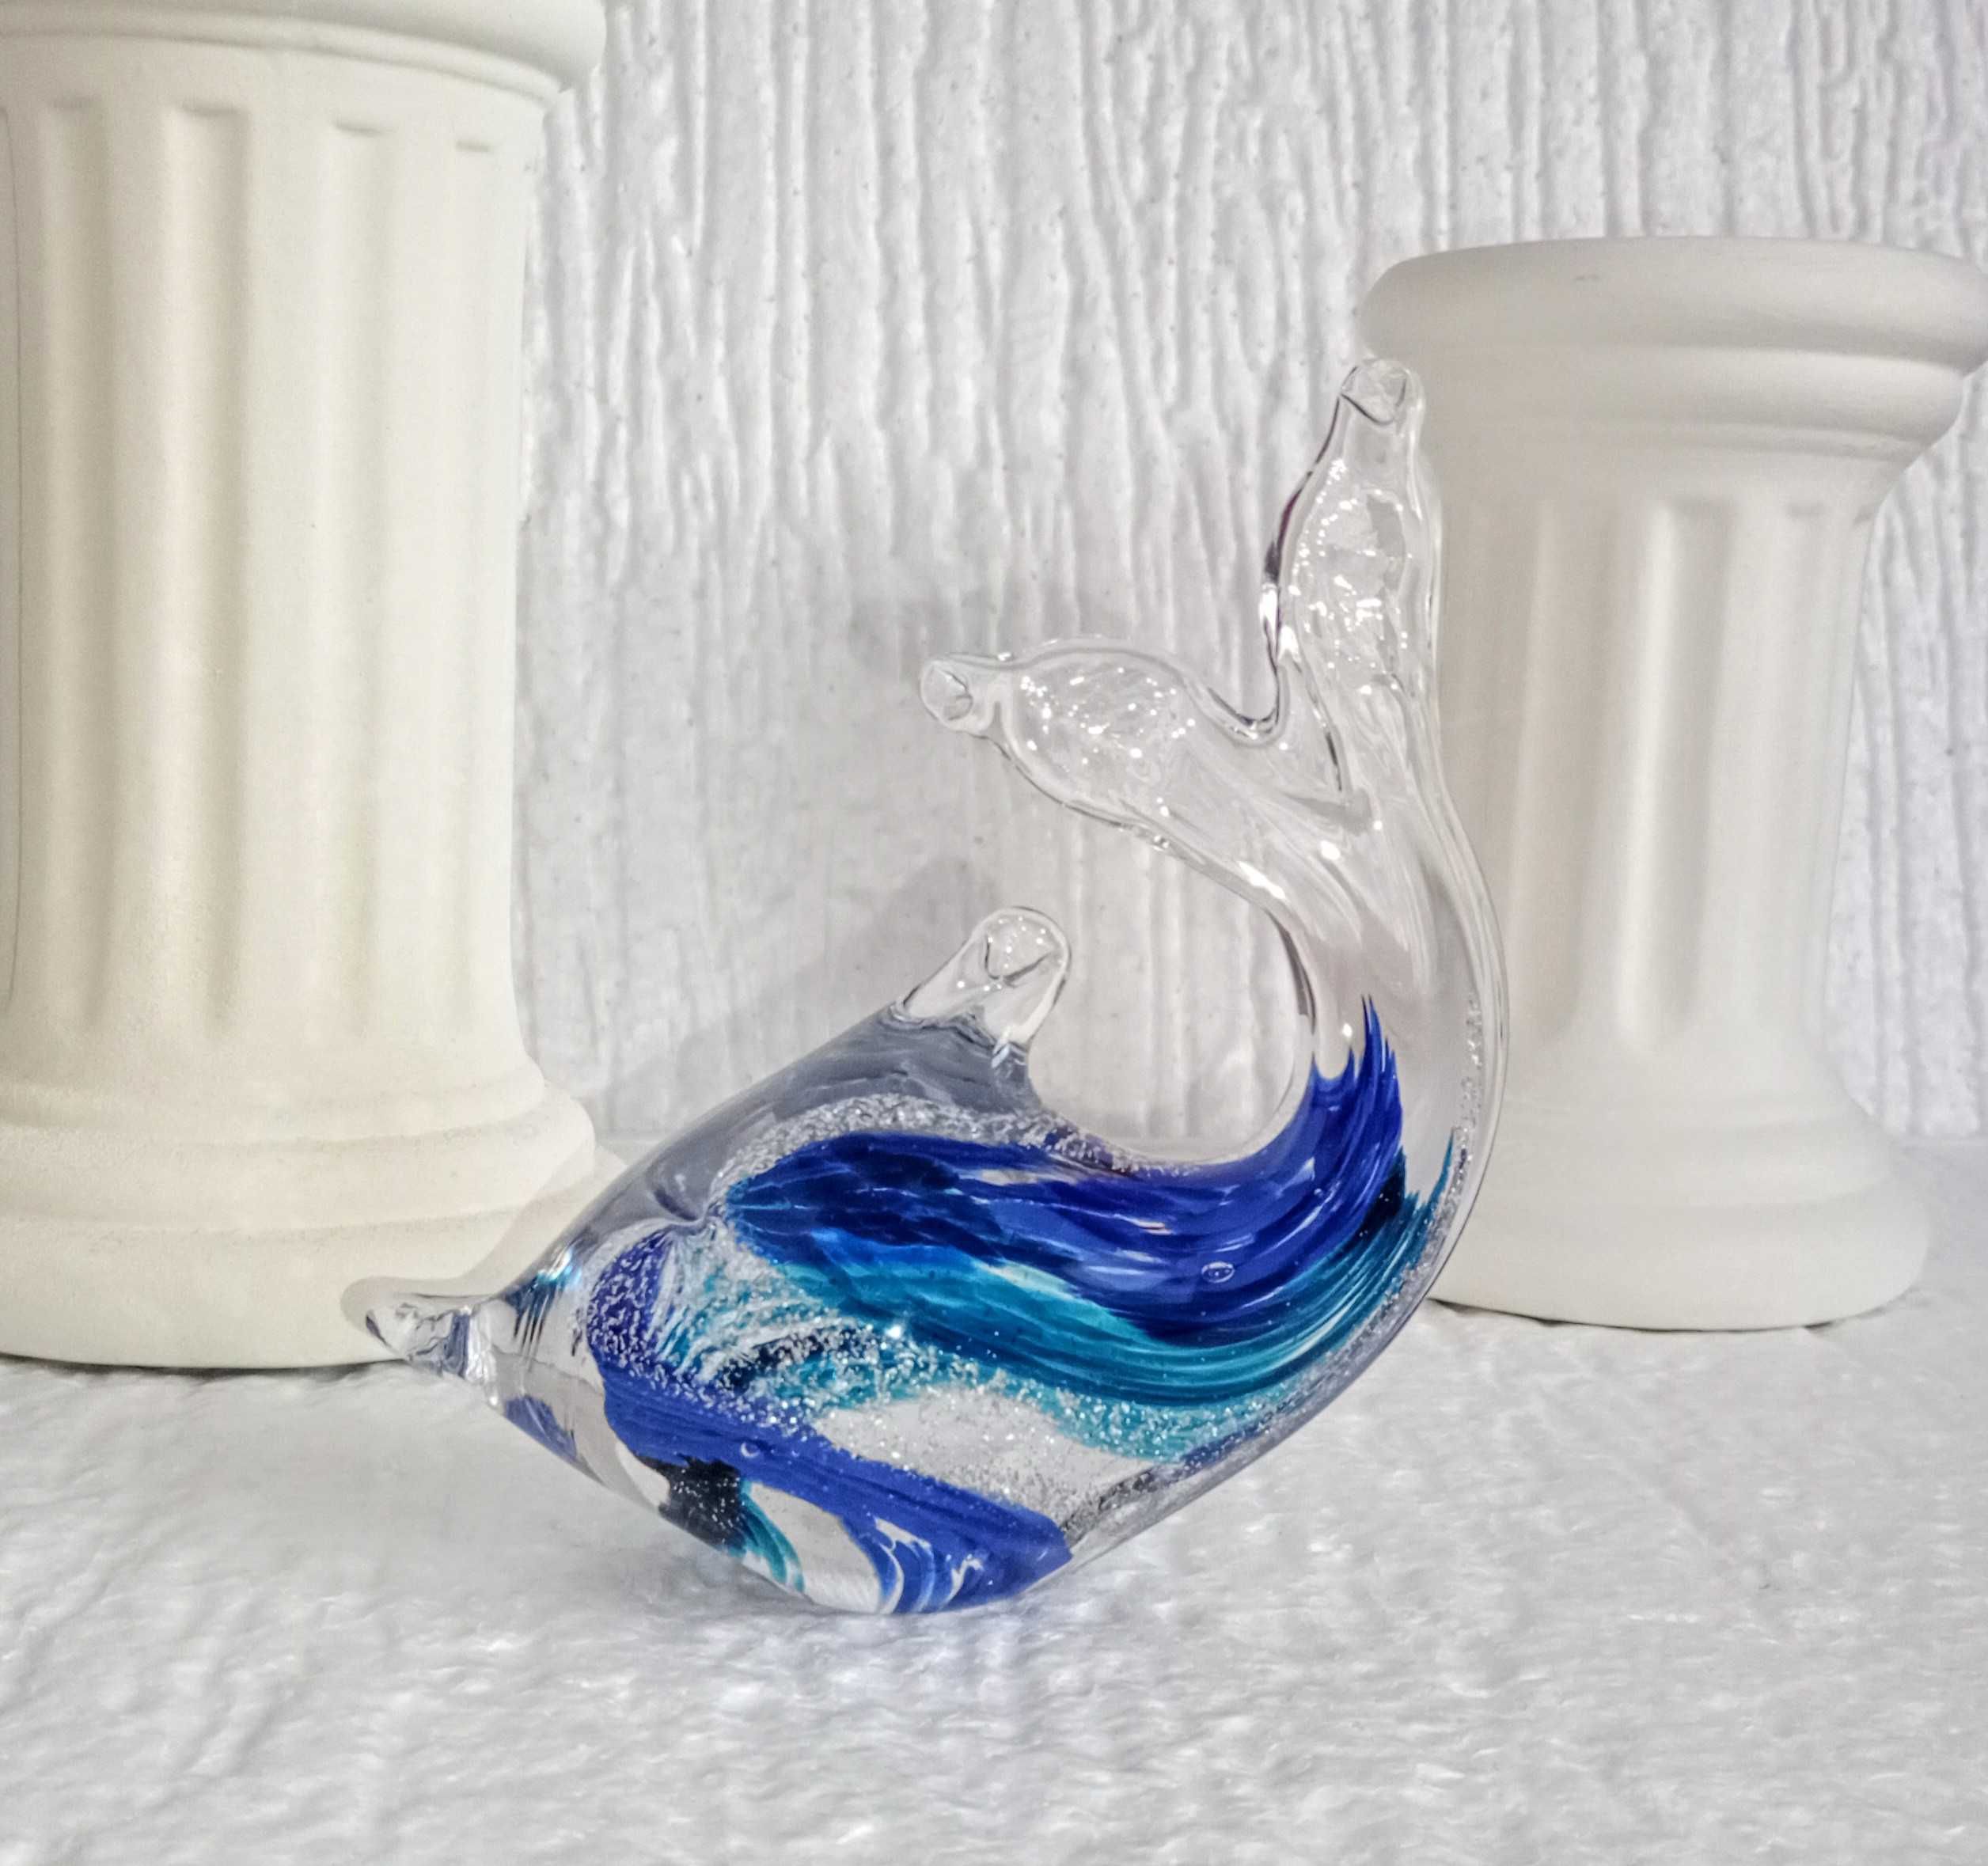 Figurka delfina ze szkła, wykonana według techniki mistrzów z Murano